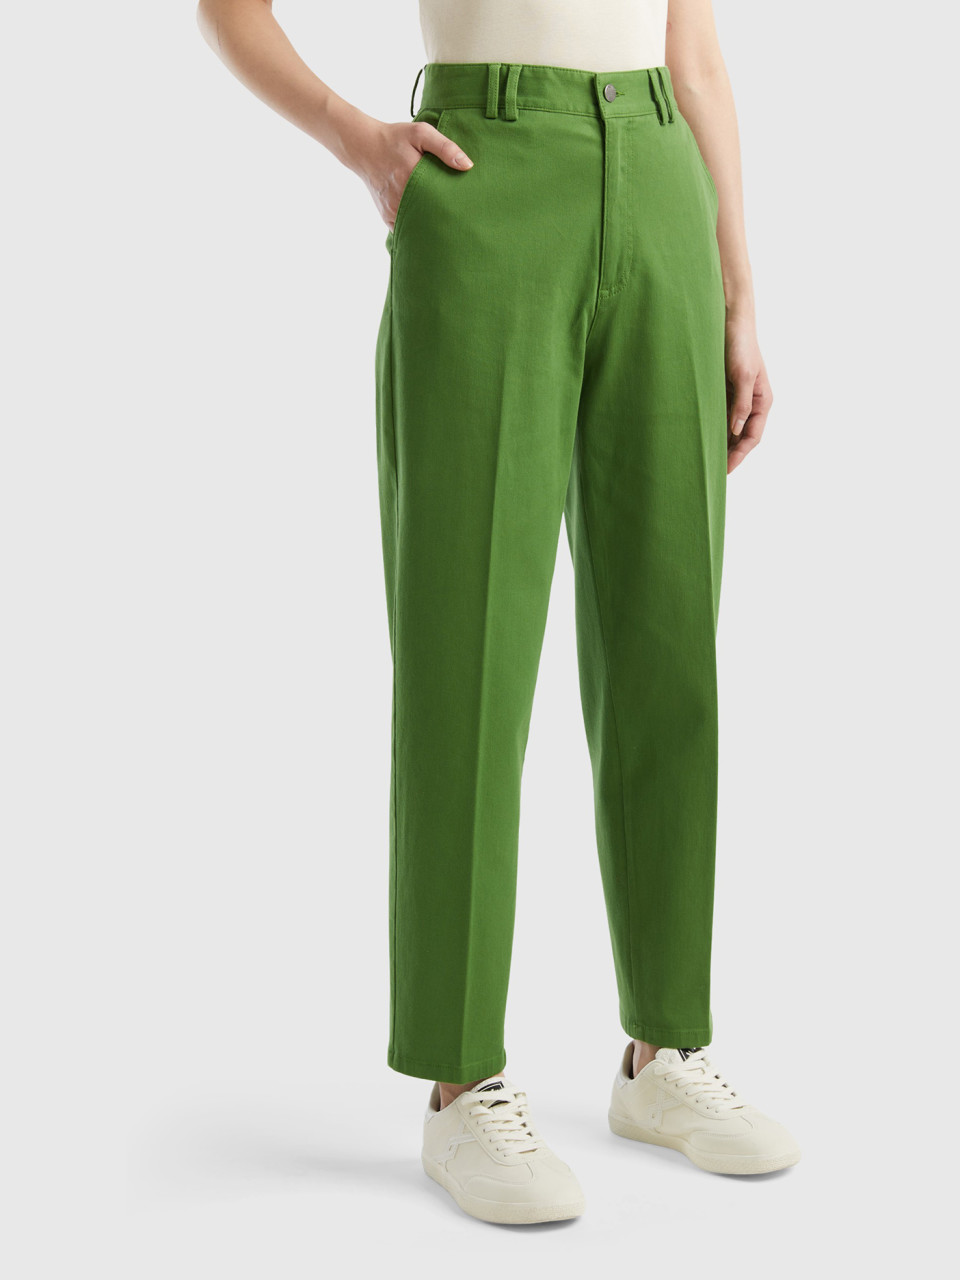 Benetton, Pantaloni Chino In Cotone E Modal®, Verde Militare, Donna